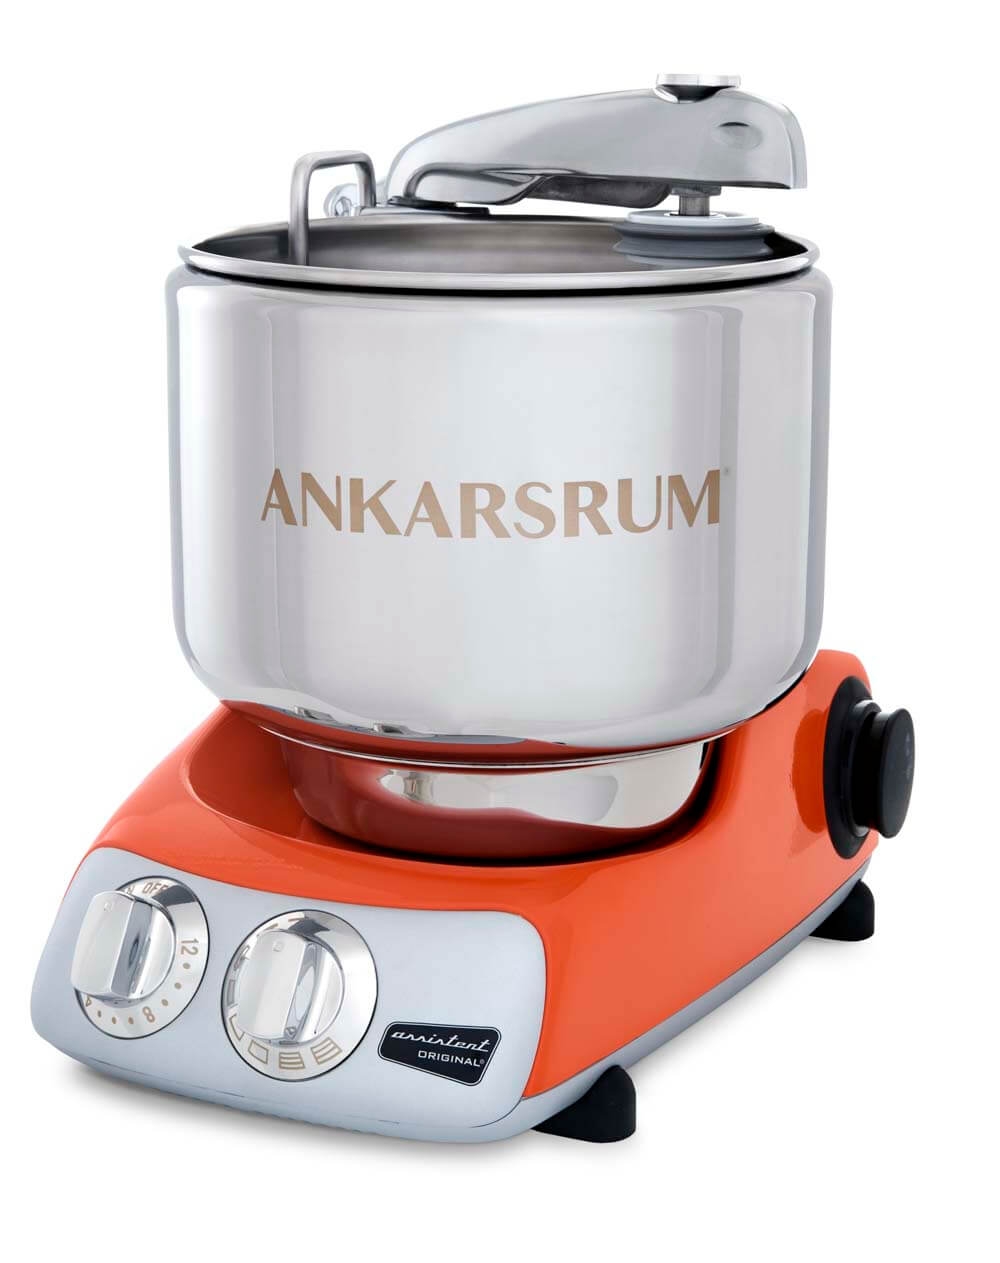 ANKARSRUM Assistent Universal-Küchenmaschine Pure Orange AKM6230